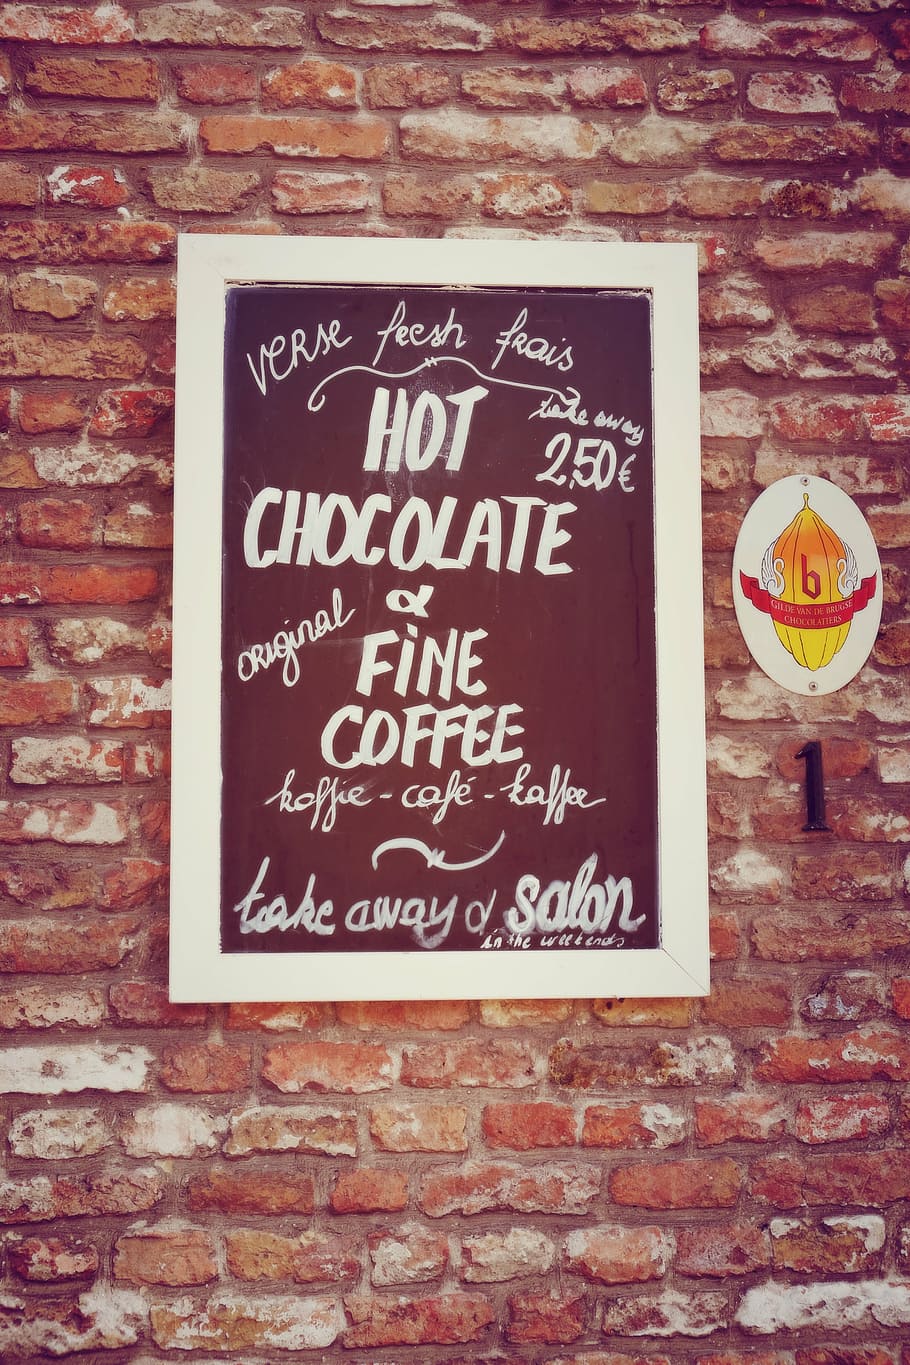 hot chocolate signage, signage, chocolate, sign, menu, coffee, coffee shop, brugge, bruges, gourmet